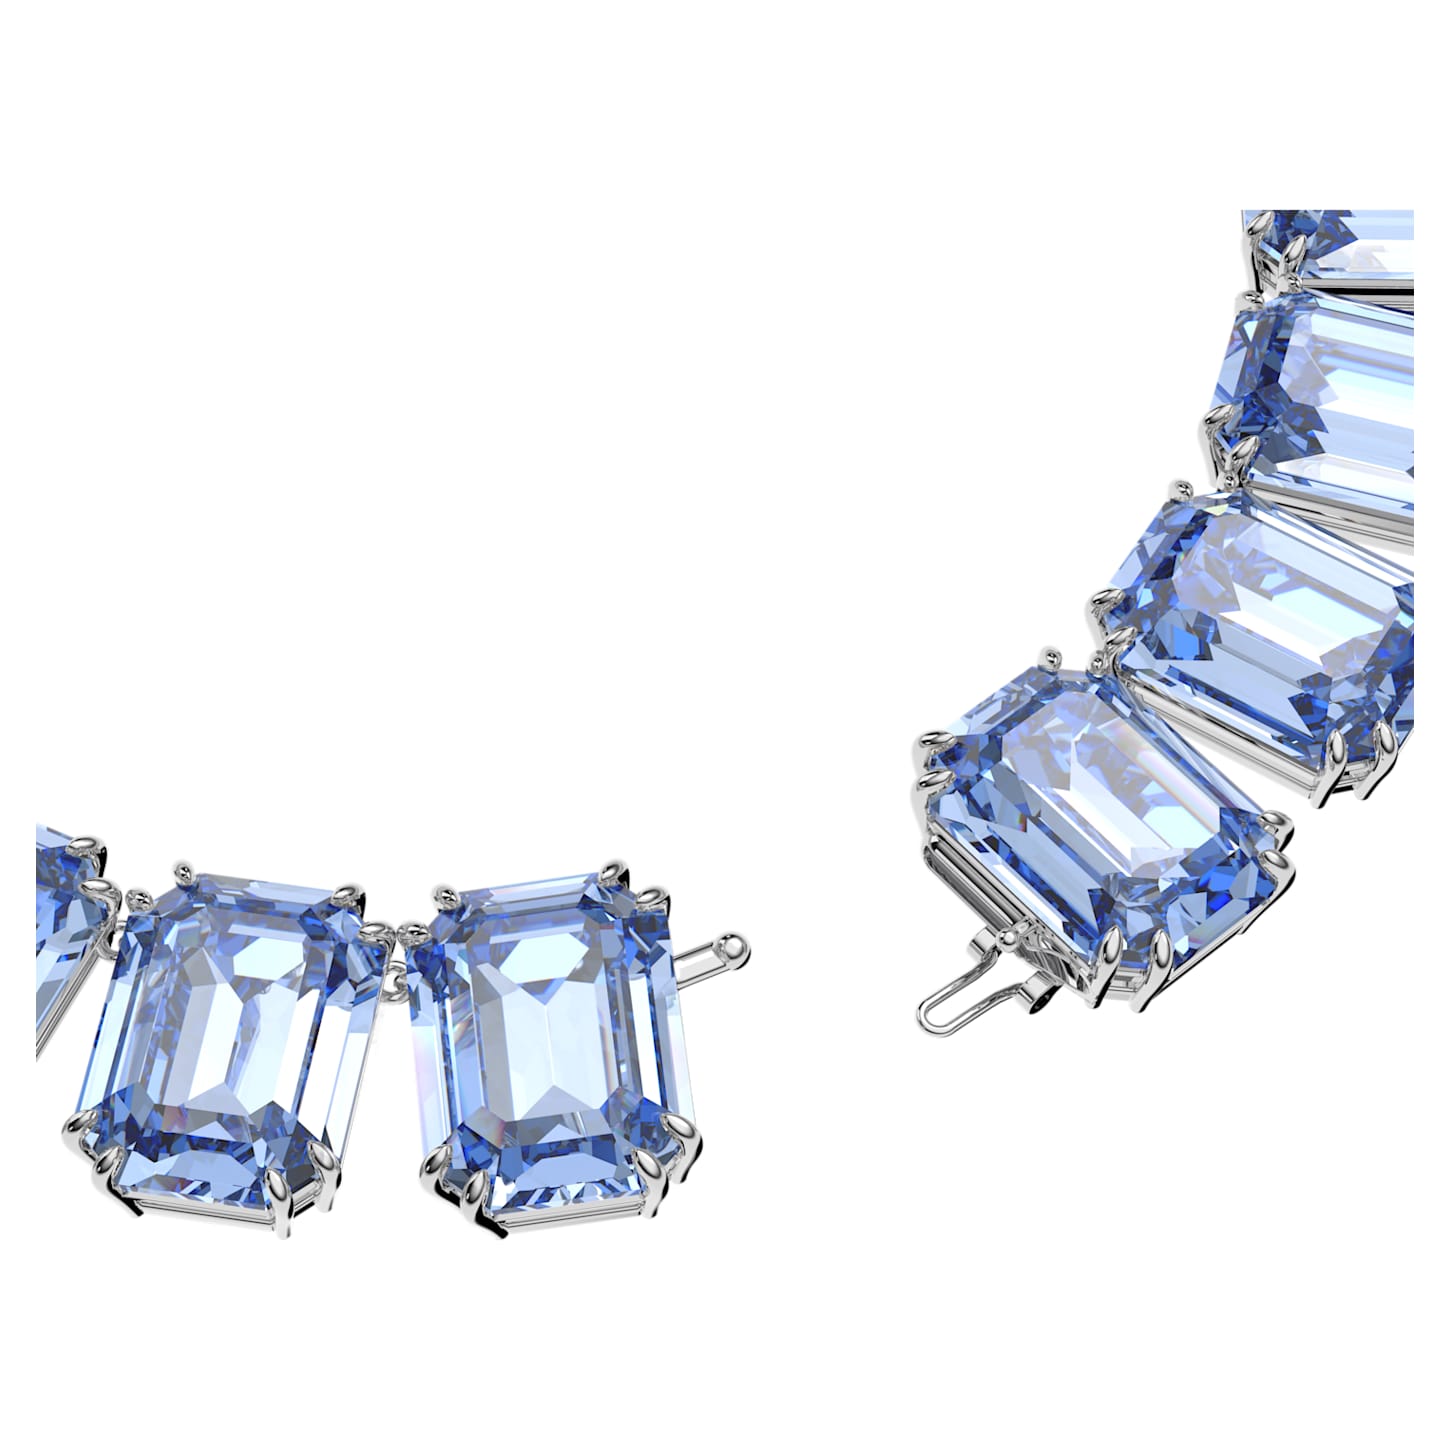 hebben zich vergist metgezel eerlijk millenia-ketting--oversized-kristallen--octagon-slijpvorm--blauw--rodium-toplaag- swarovski-5609703.png